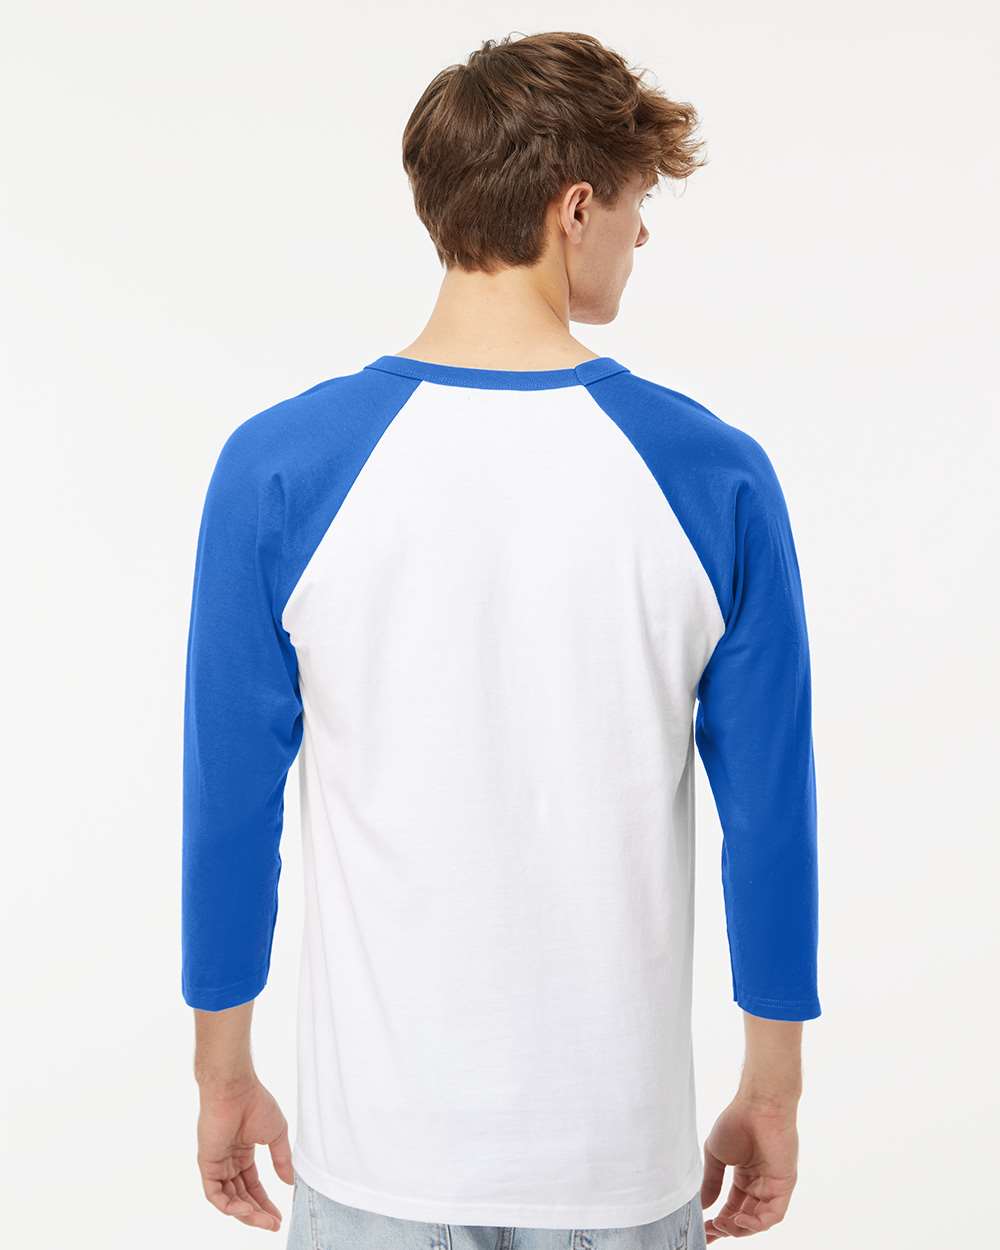 M&O Raglan Three-Quarter Sleeve Baseball T-Shirt 5540 #colormdl_White/ Royal